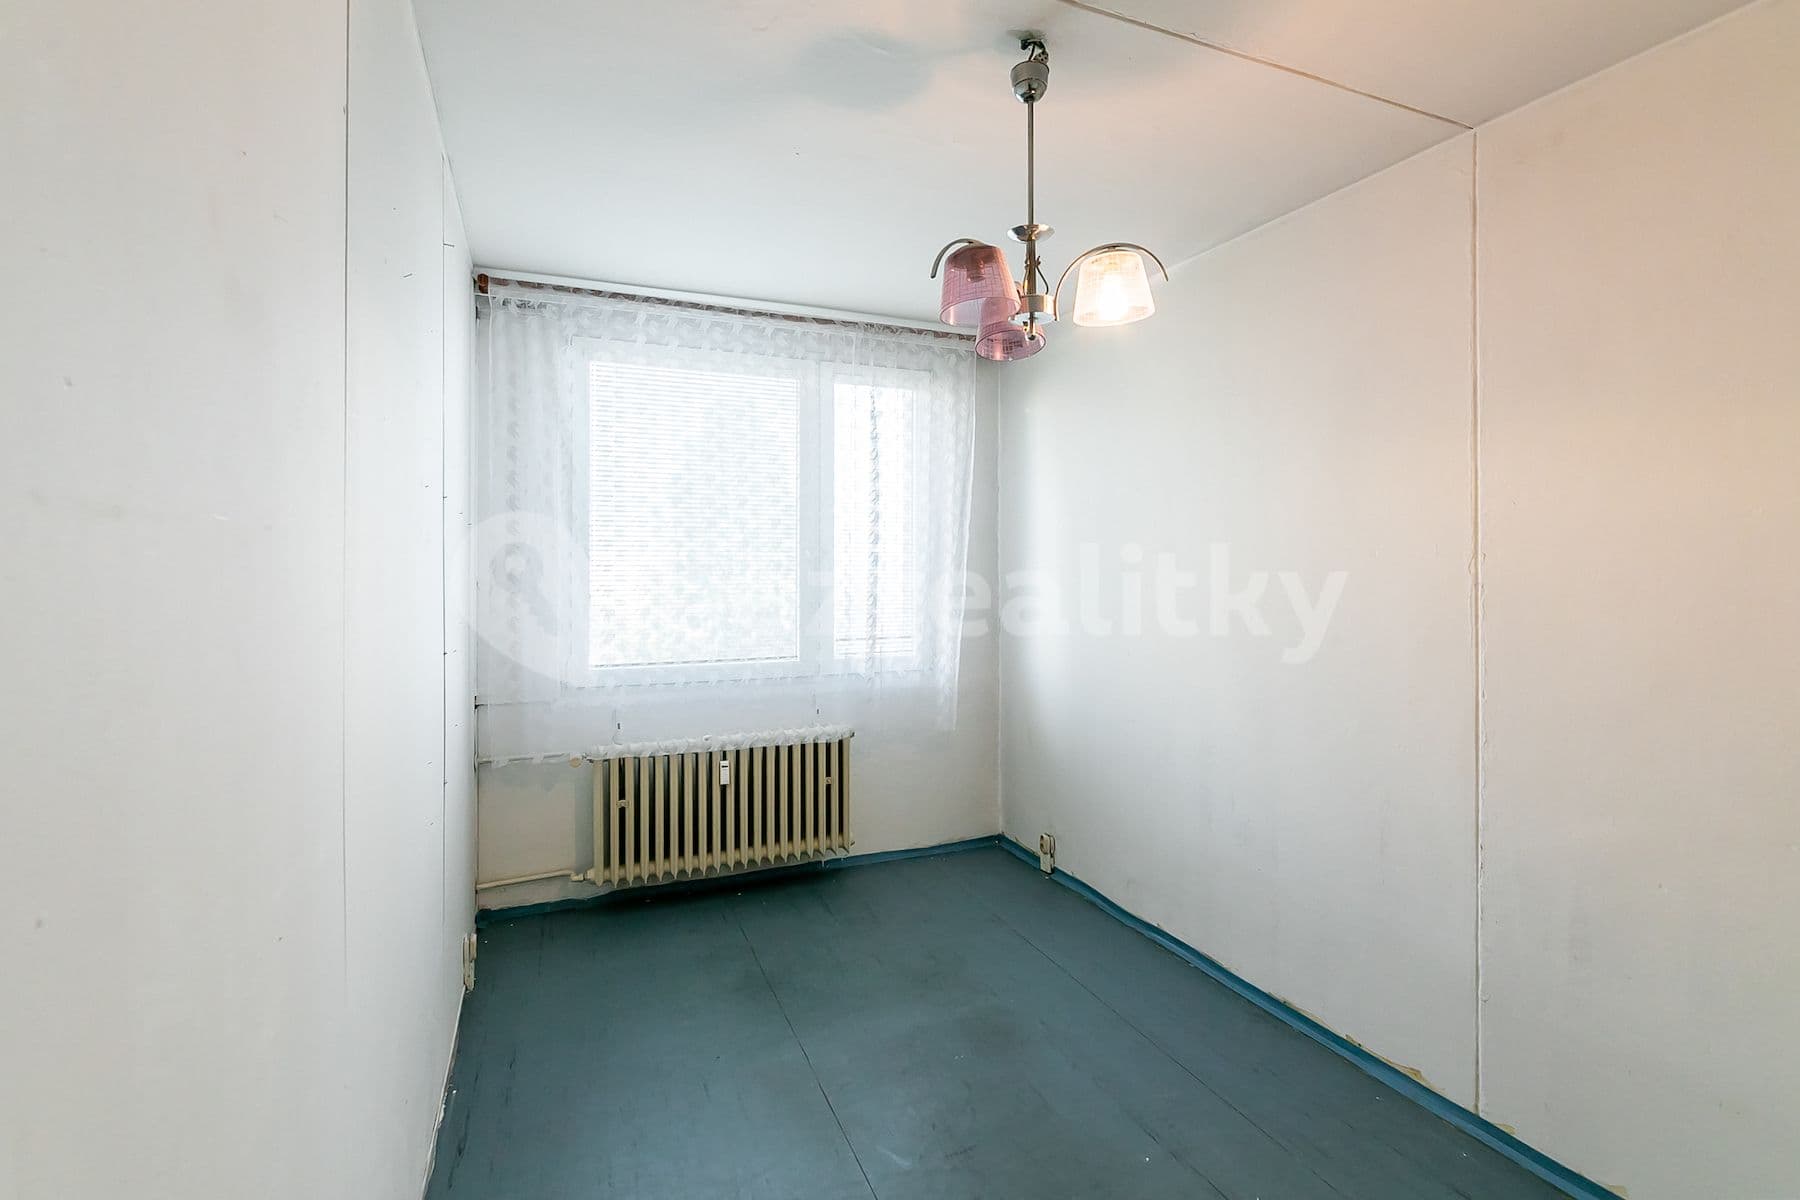 3 bedroom flat for sale, 69 m², Jetelová, Prague, Prague